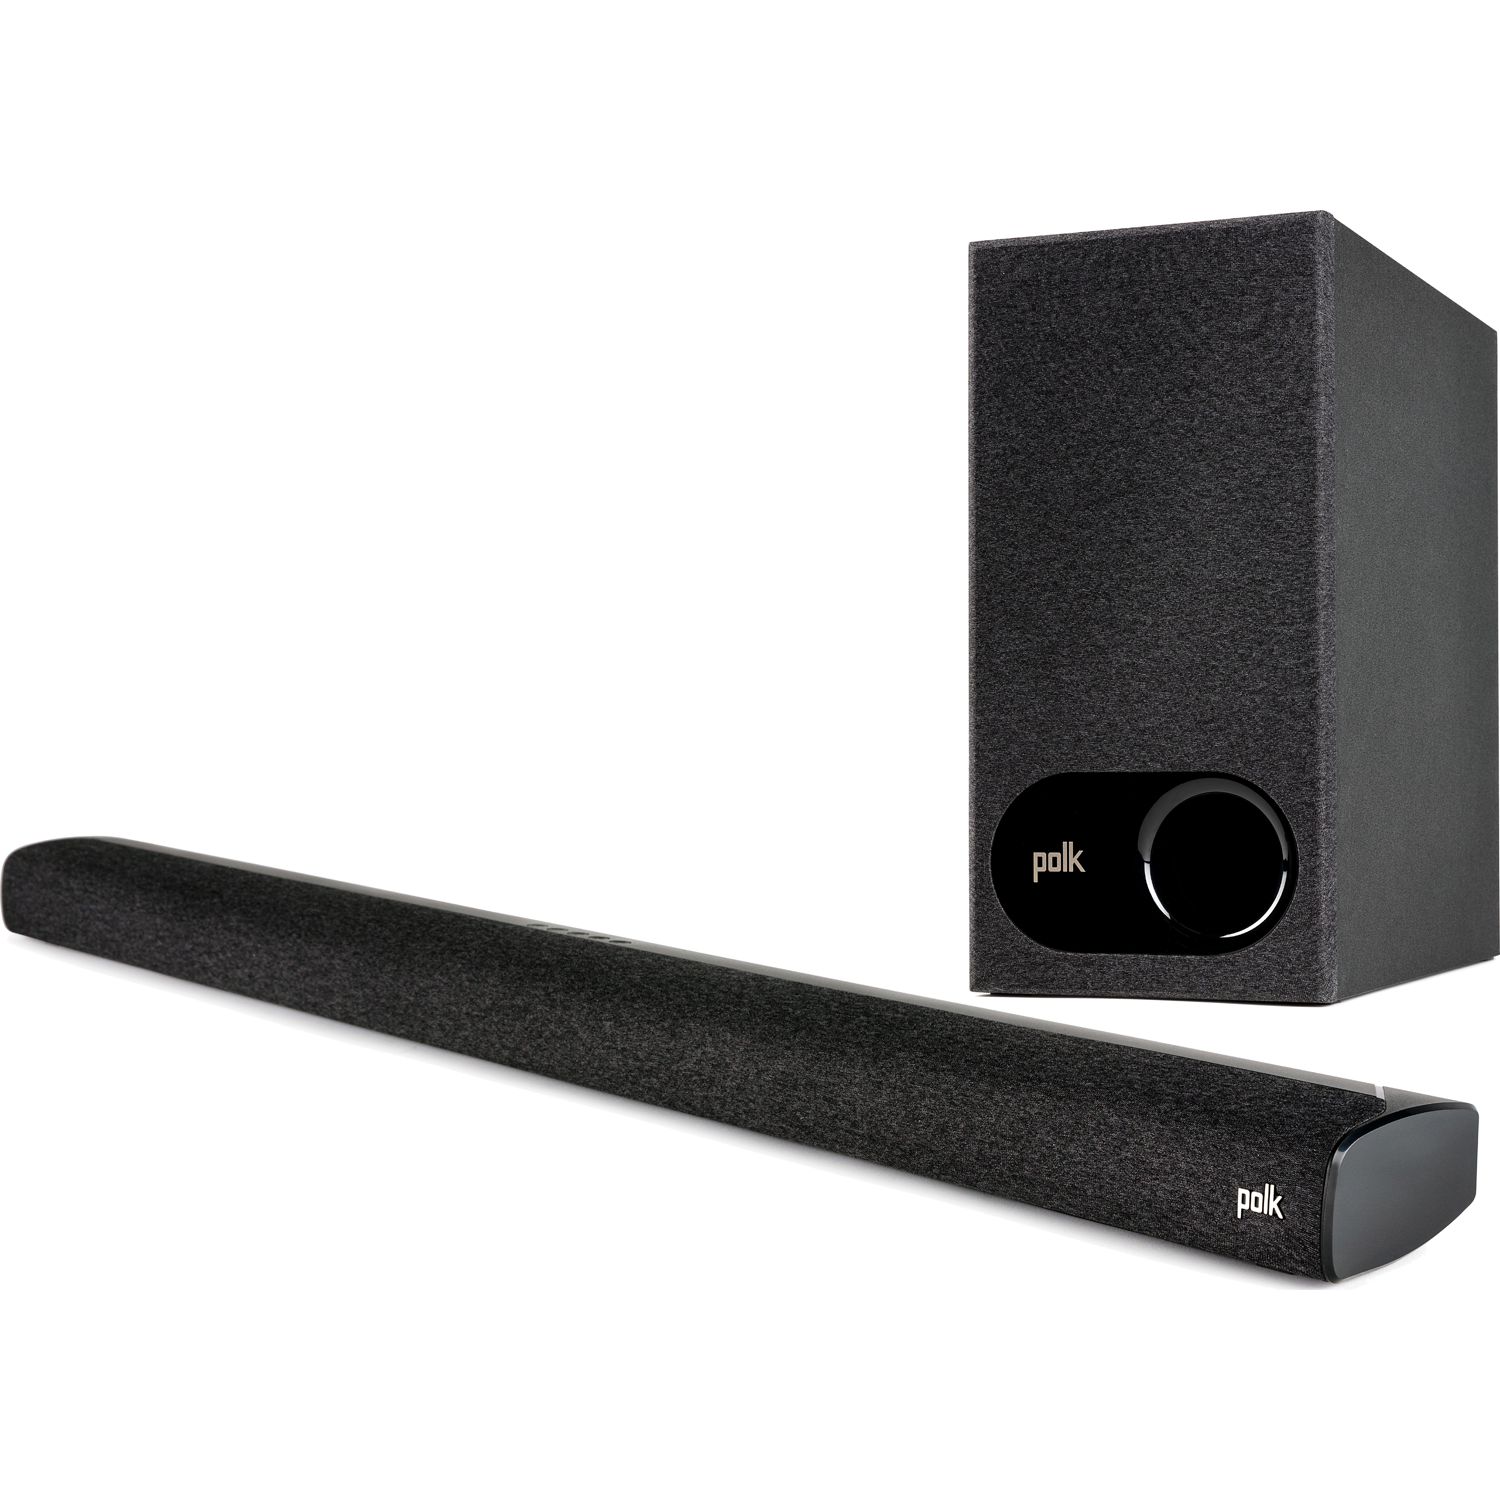 POLK AUDIO NEW Signa S3 SoundBar & Wireless Sub w/ Chromecast